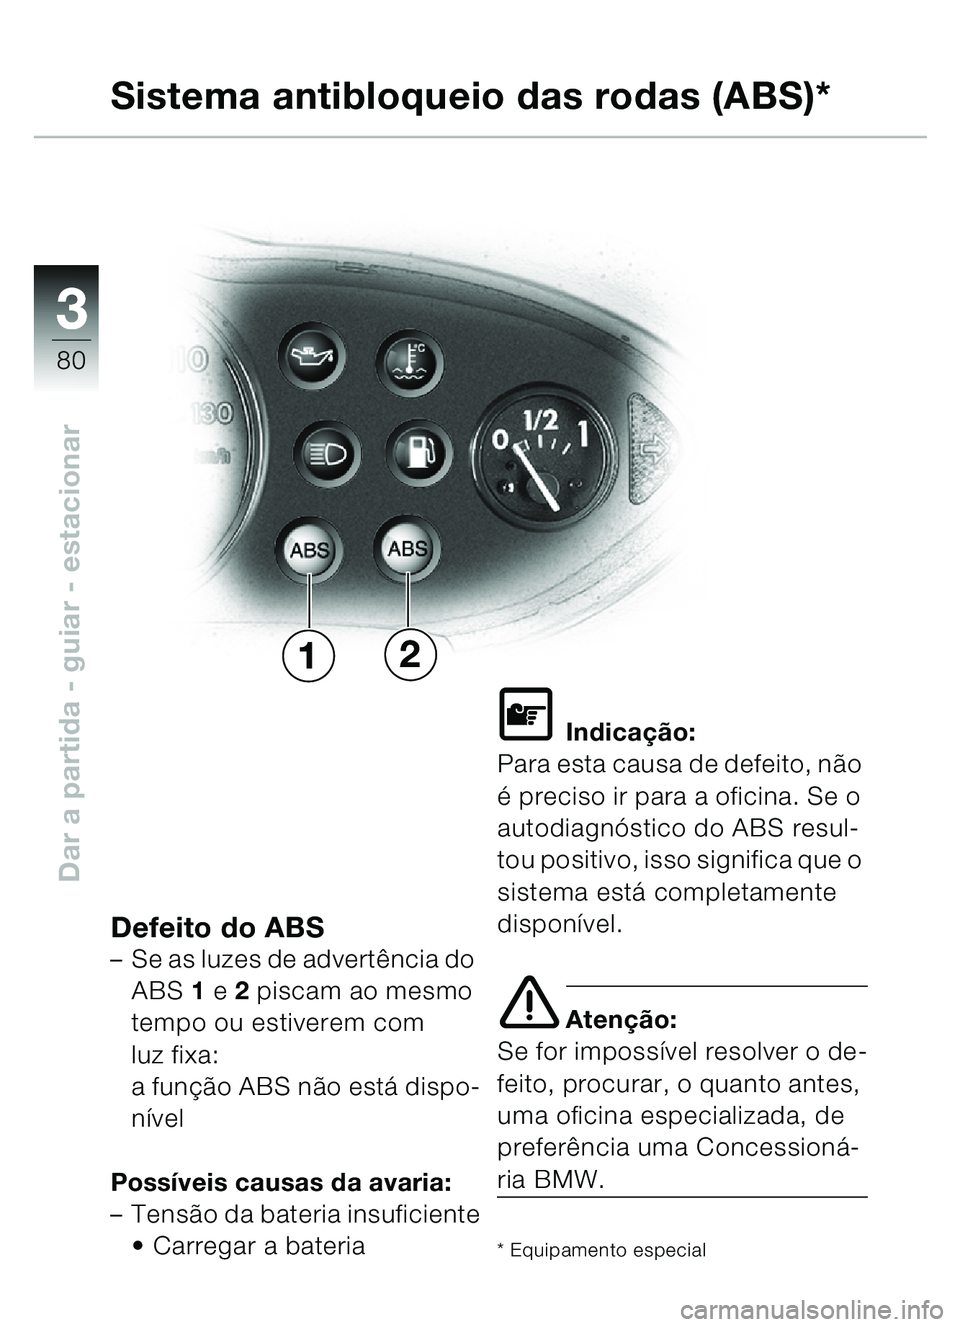 BMW MOTORRAD C1 2000  Manual do condutor (in Portuguese) 33
80
Dar a partida - guiar - estacionar
Sistema antibloqueio das rodas (ABS)*
Defeito do ABS–Se as luzes de advert ência do 
ABS  1 e  2 piscam ao mesmo 
tempo ou estiverem com
luz fixa: 
a funç�